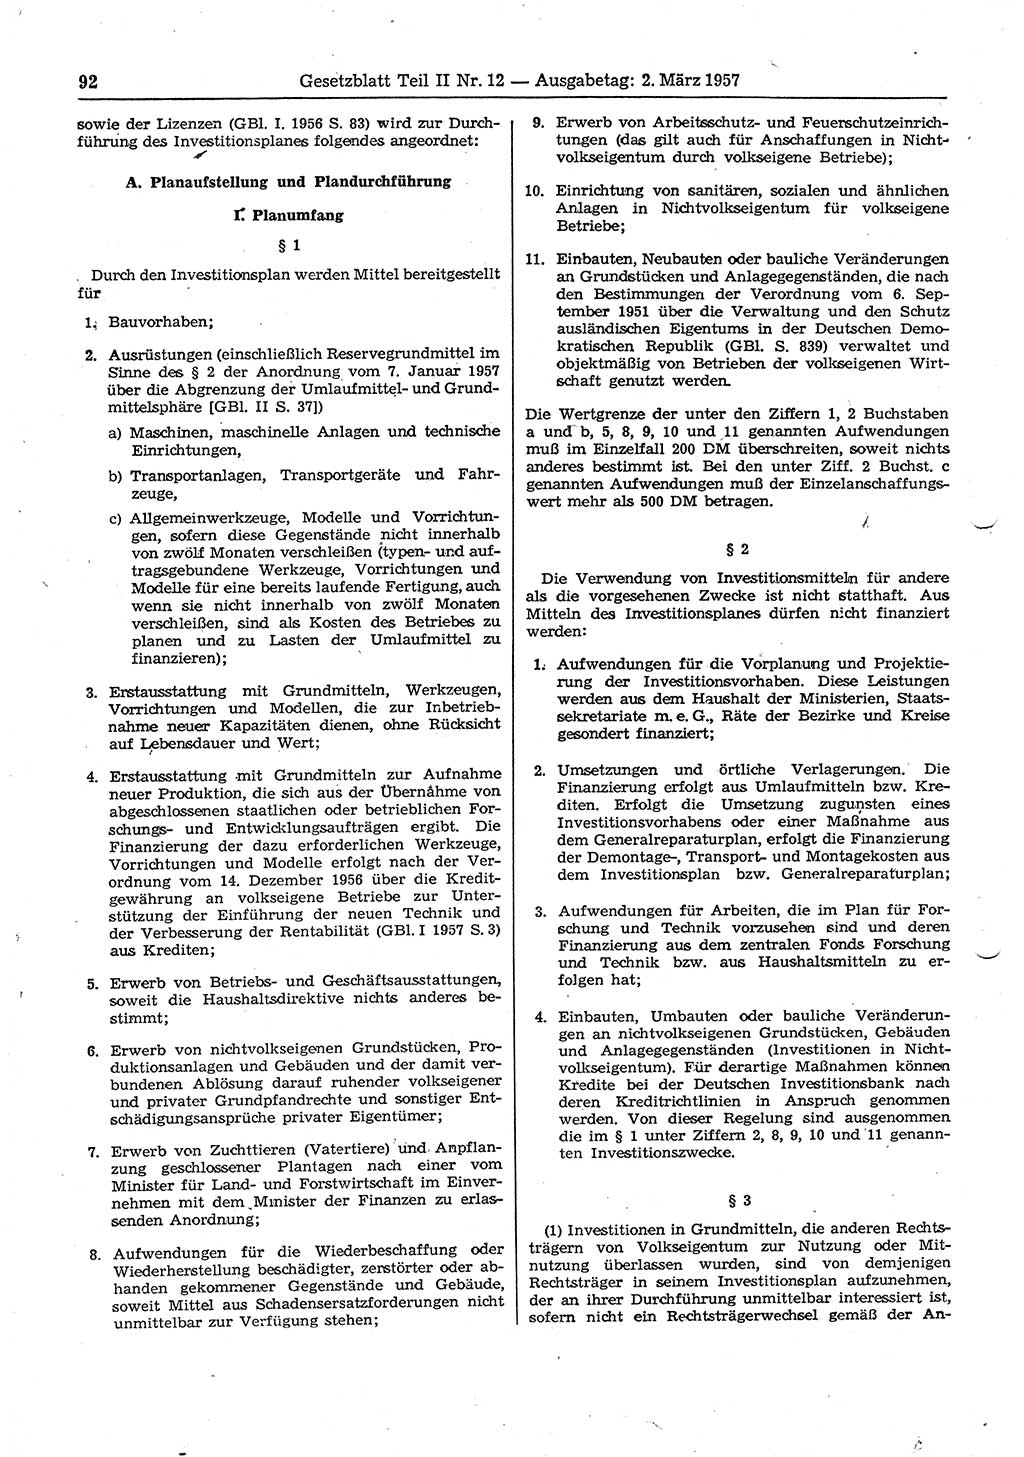 Gesetzblatt (GBl.) der Deutschen Demokratischen Republik (DDR) Teil ⅠⅠ 1957, Seite 92 (GBl. DDR ⅠⅠ 1957, S. 92)